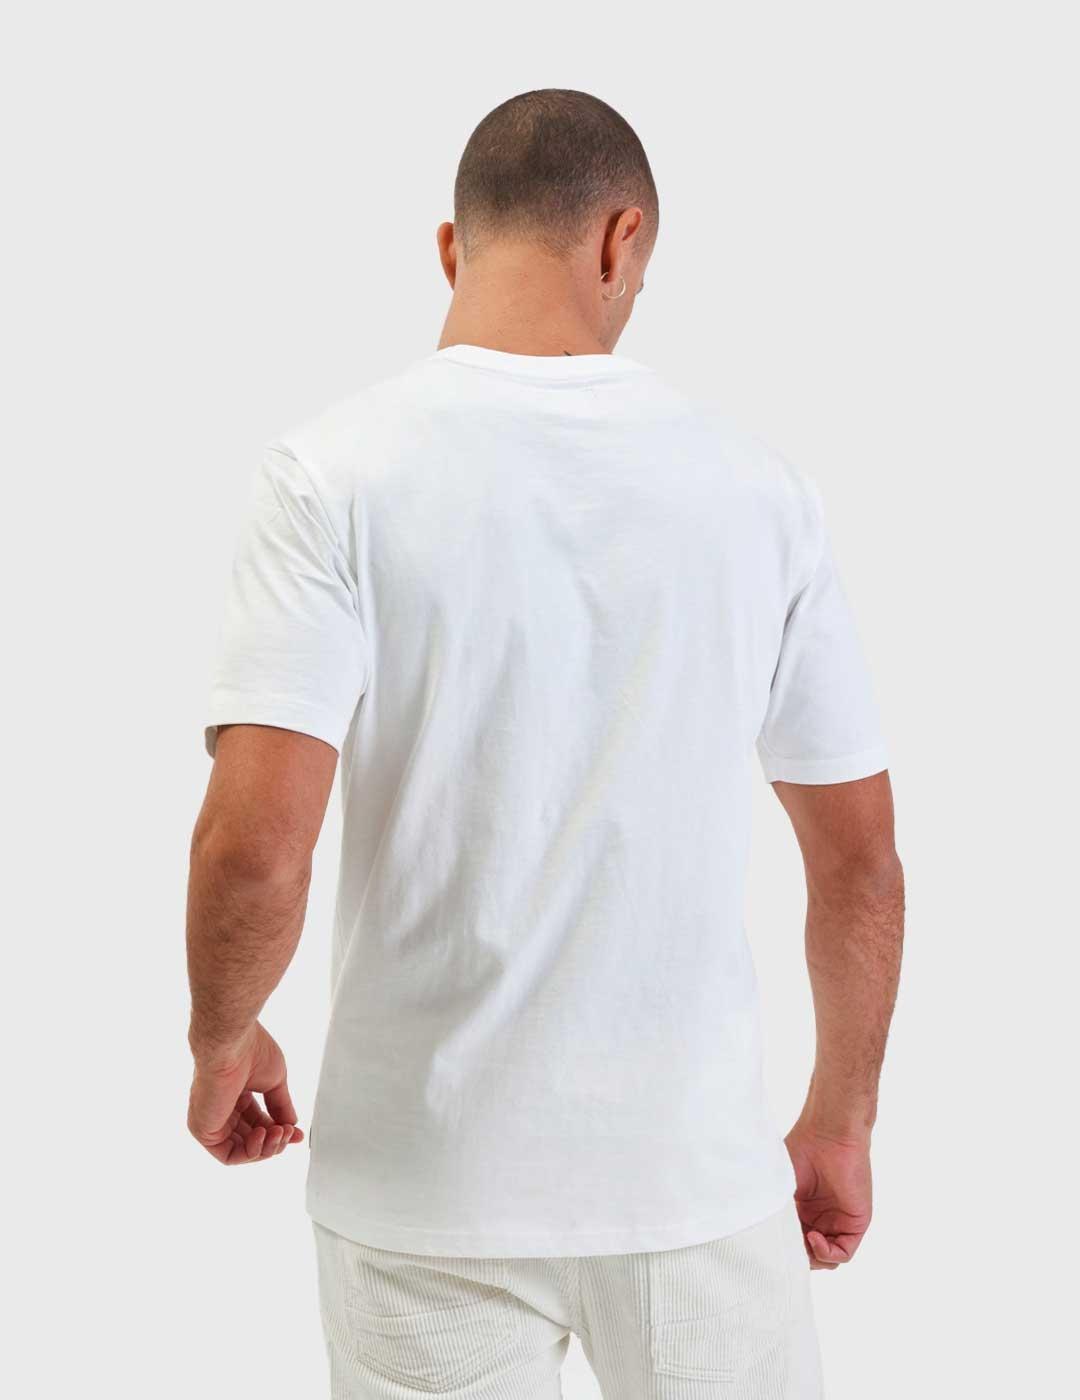 Camiseta Gianni Lupo blanca para hombre